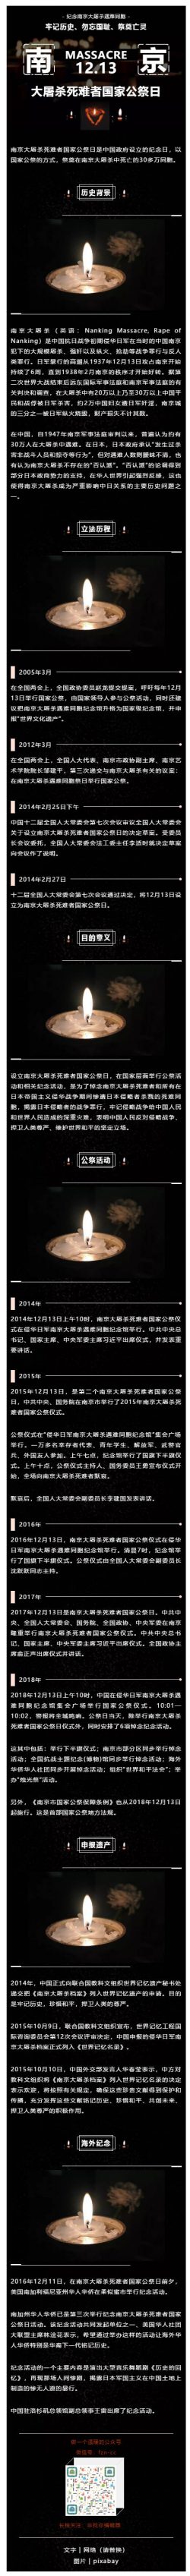 纪念南京大屠杀国家公祭日黑色深色背景微信推文模板